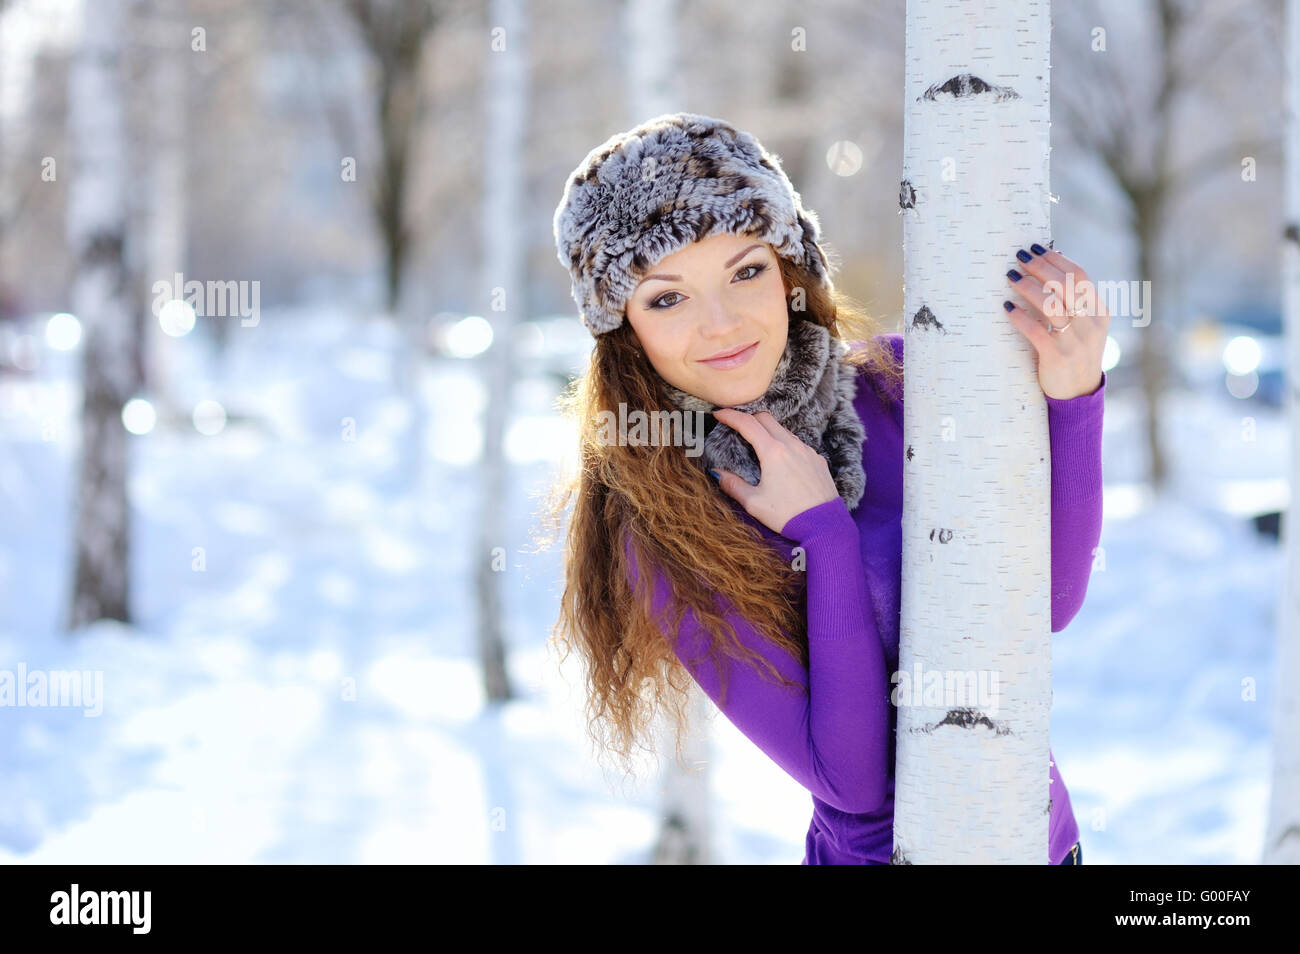 Chica de navidad.mujer invierno ventisca de nieve Foto de stock